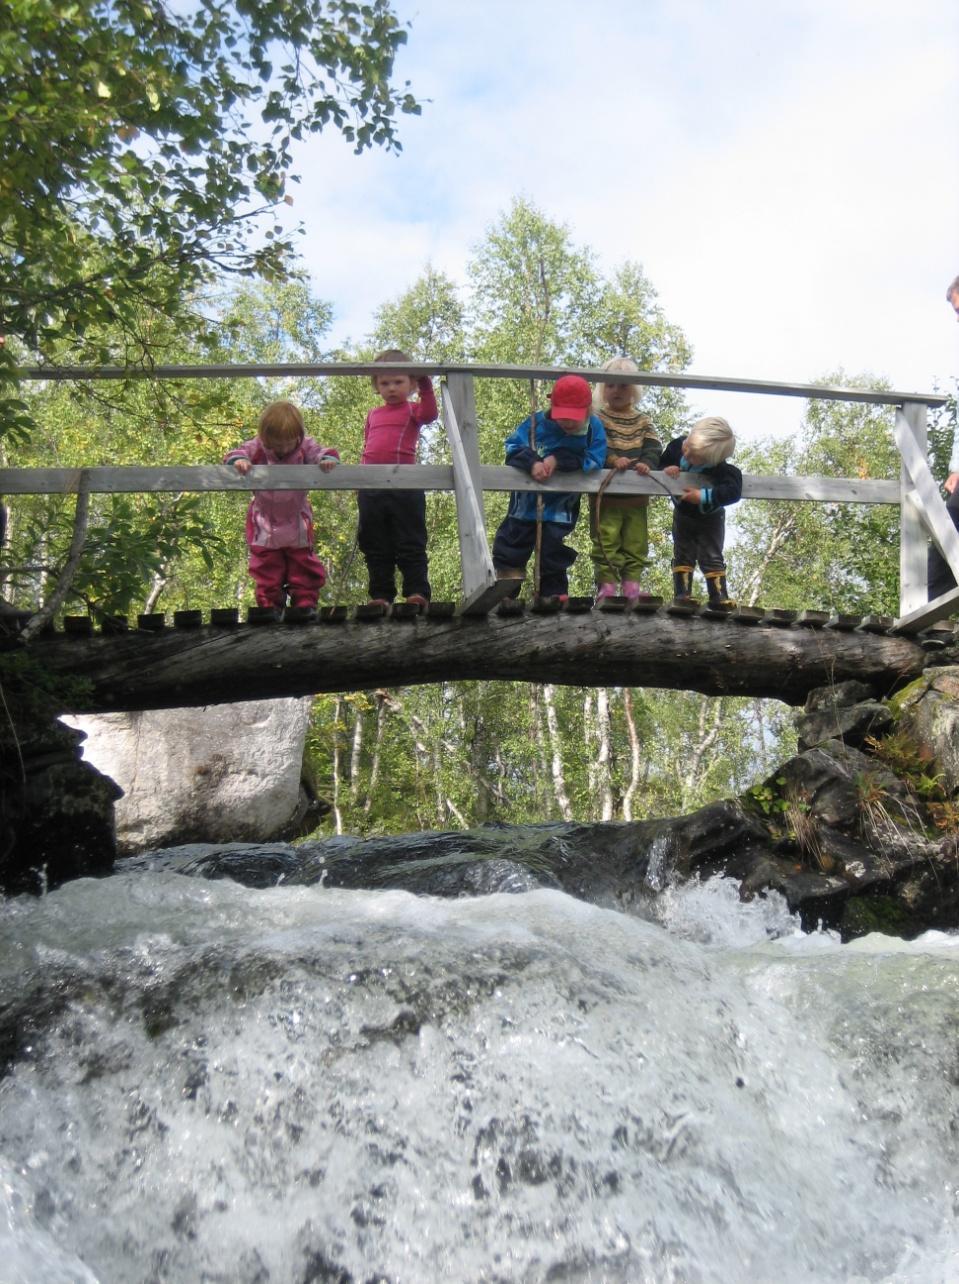 Barnas nasjonalpark Idèen om barnas nasjonalpark ble første gang lansert av Øystein Dahle (daværende styreleder for DNT) under åpningen av Junkerdal nasjonalpark i 2004.